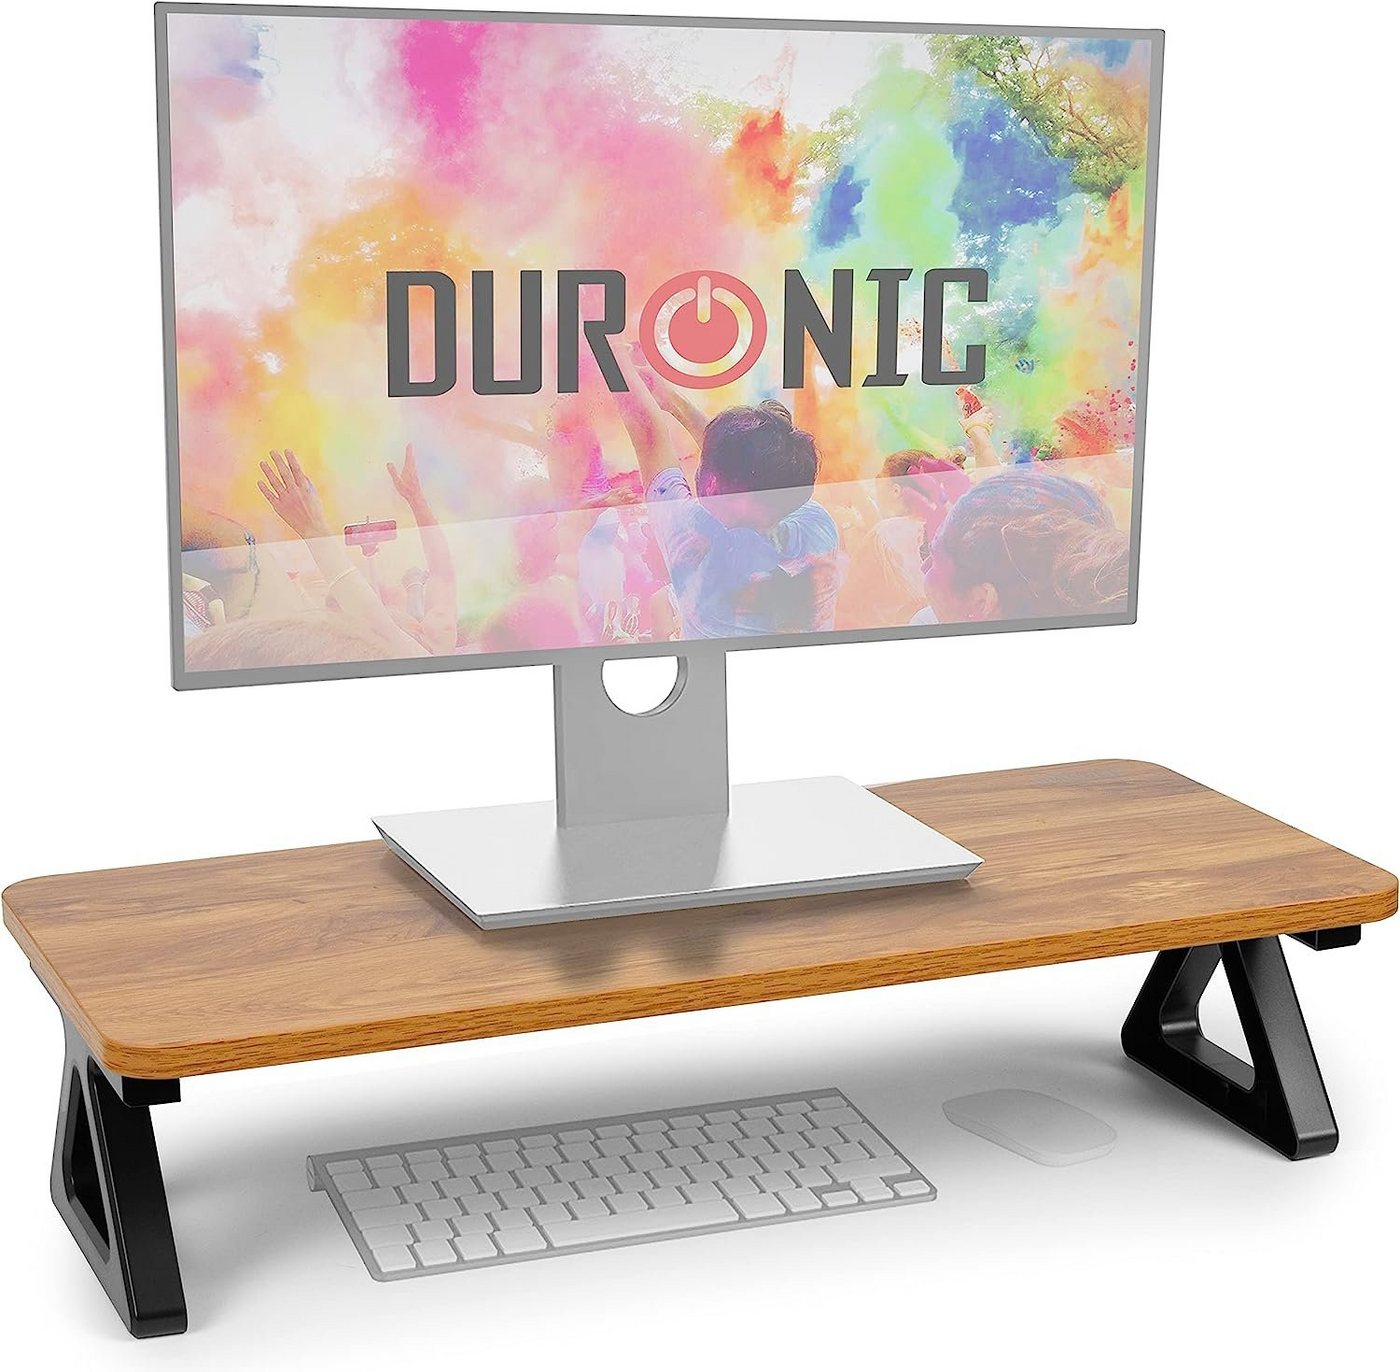 Duronic Monitorständer, (DM06-1 AO Monitorständer, 62 x 30 cm Fläche, Bis 10kg, 15 cm Höhe) von Duronic